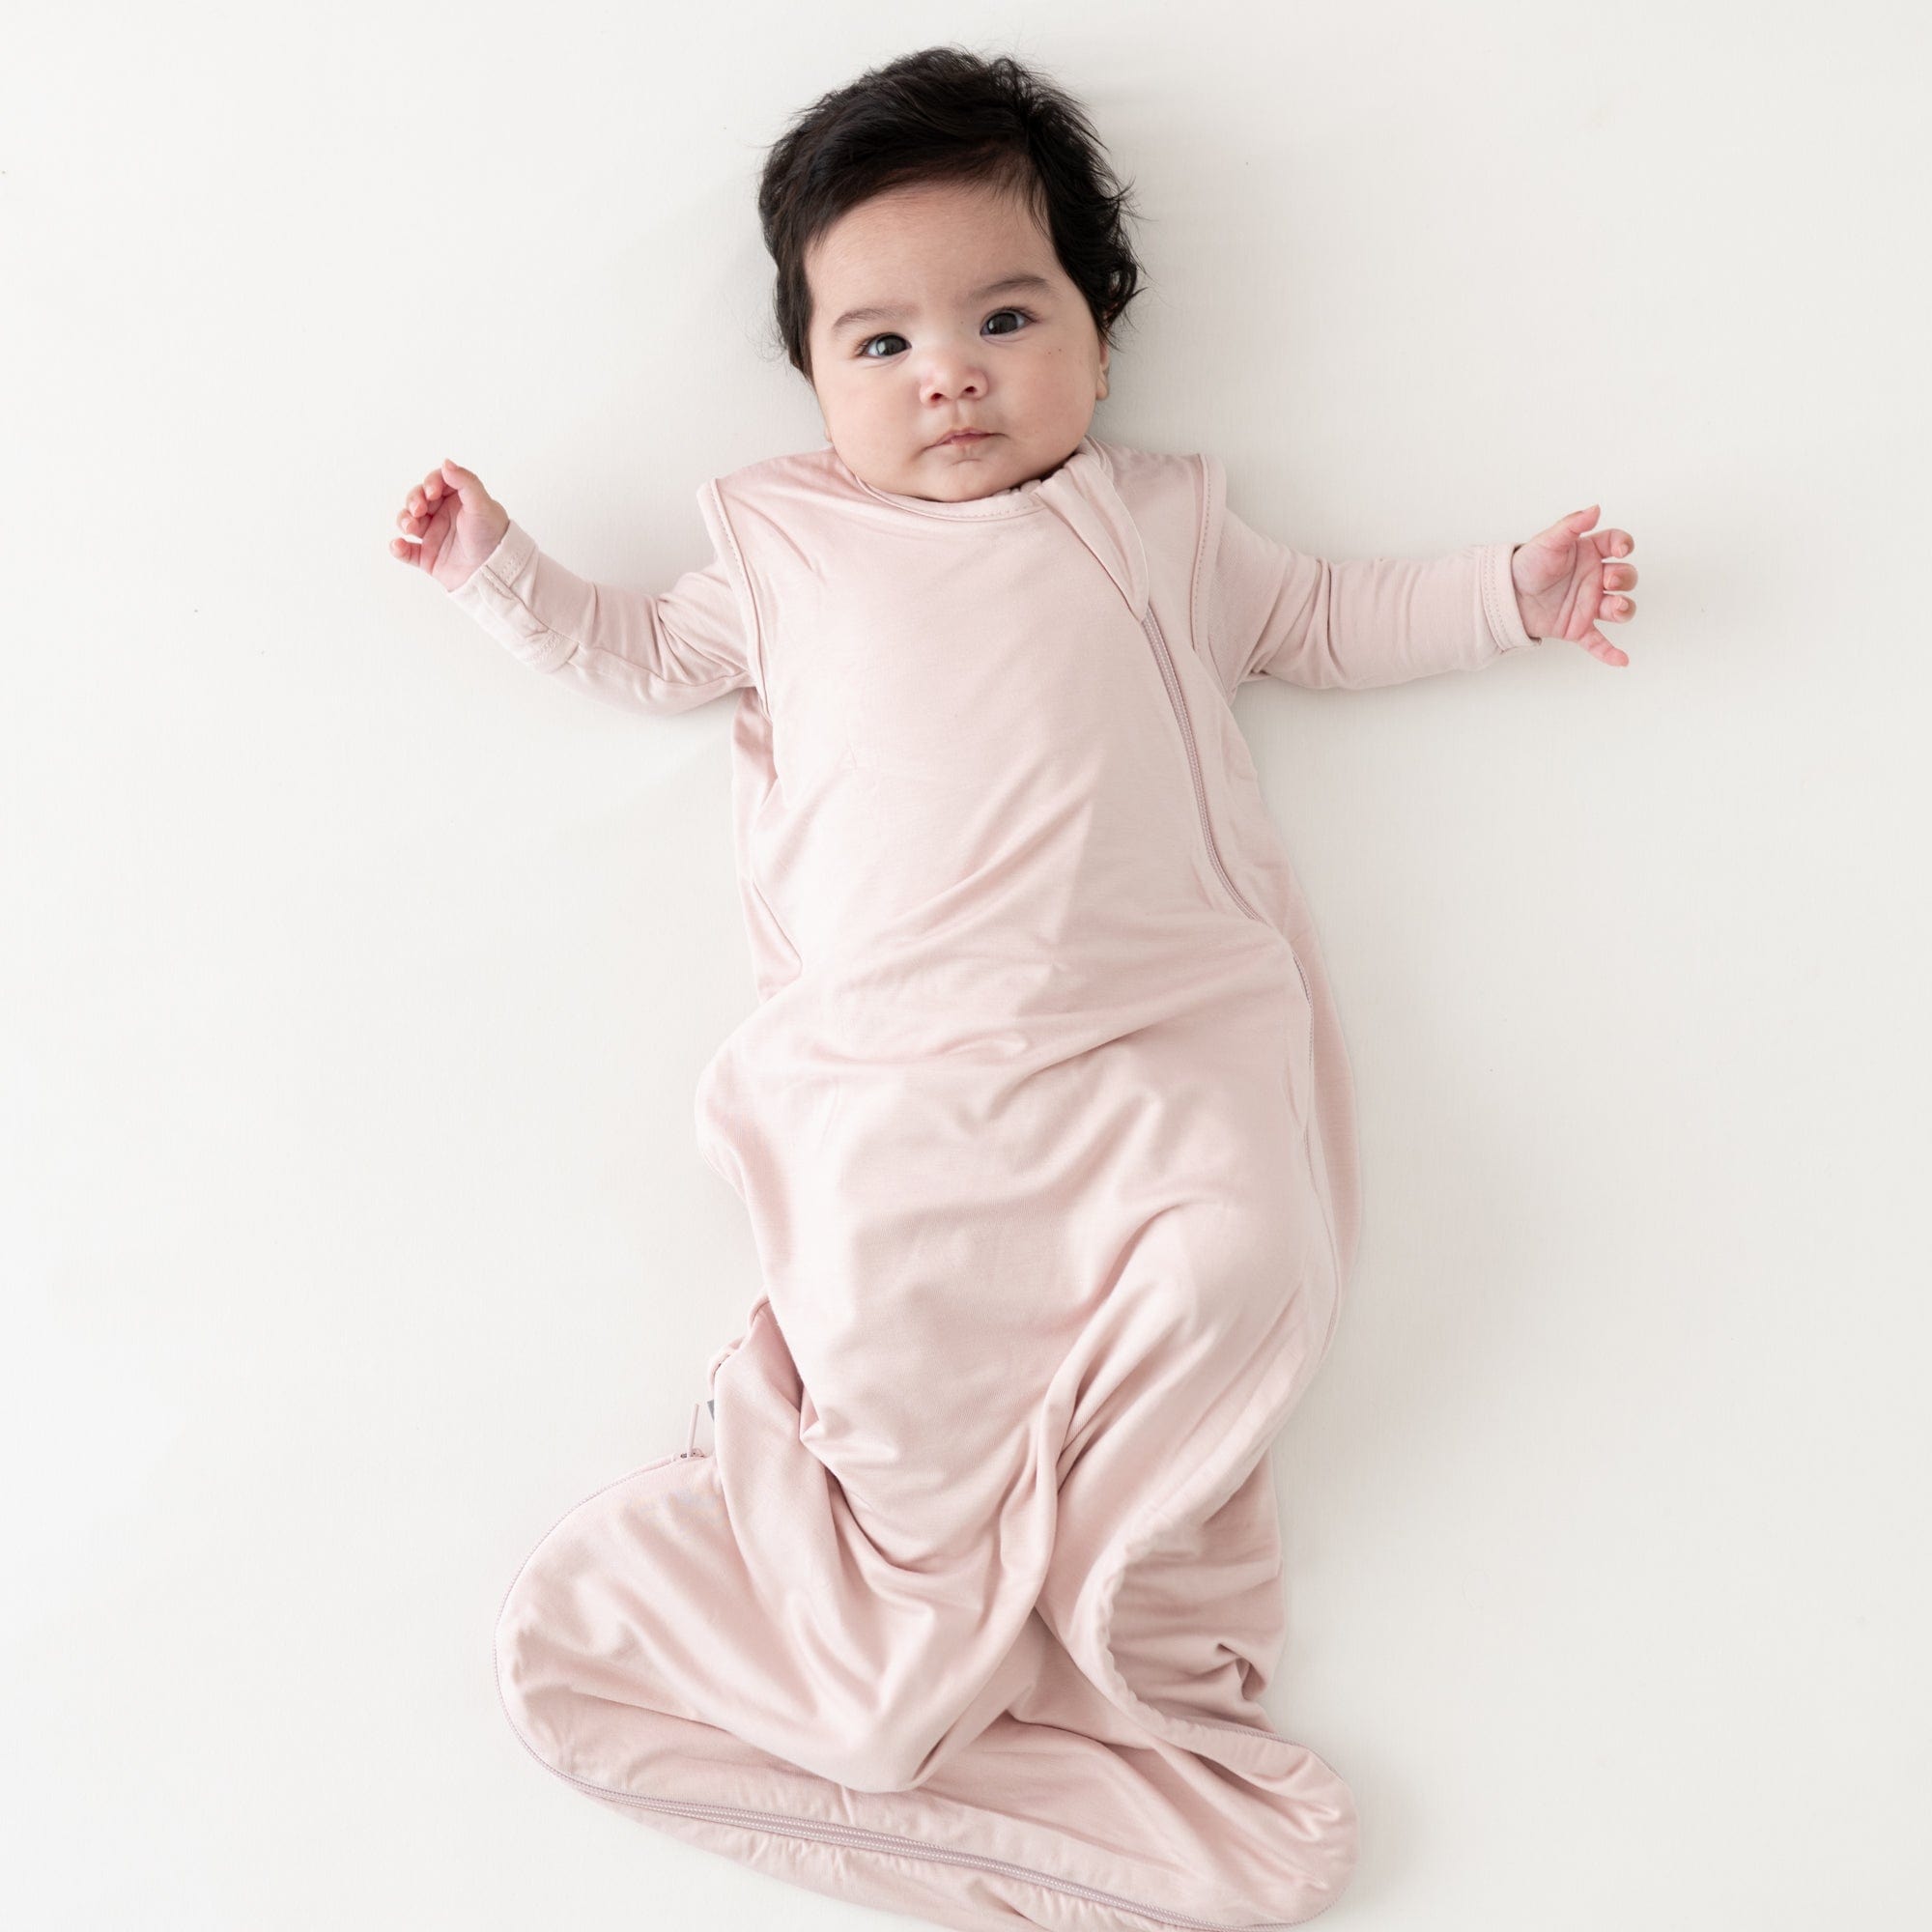 Baby wearing Kyte Baby Sleep Bag in Blush TOG 0.5